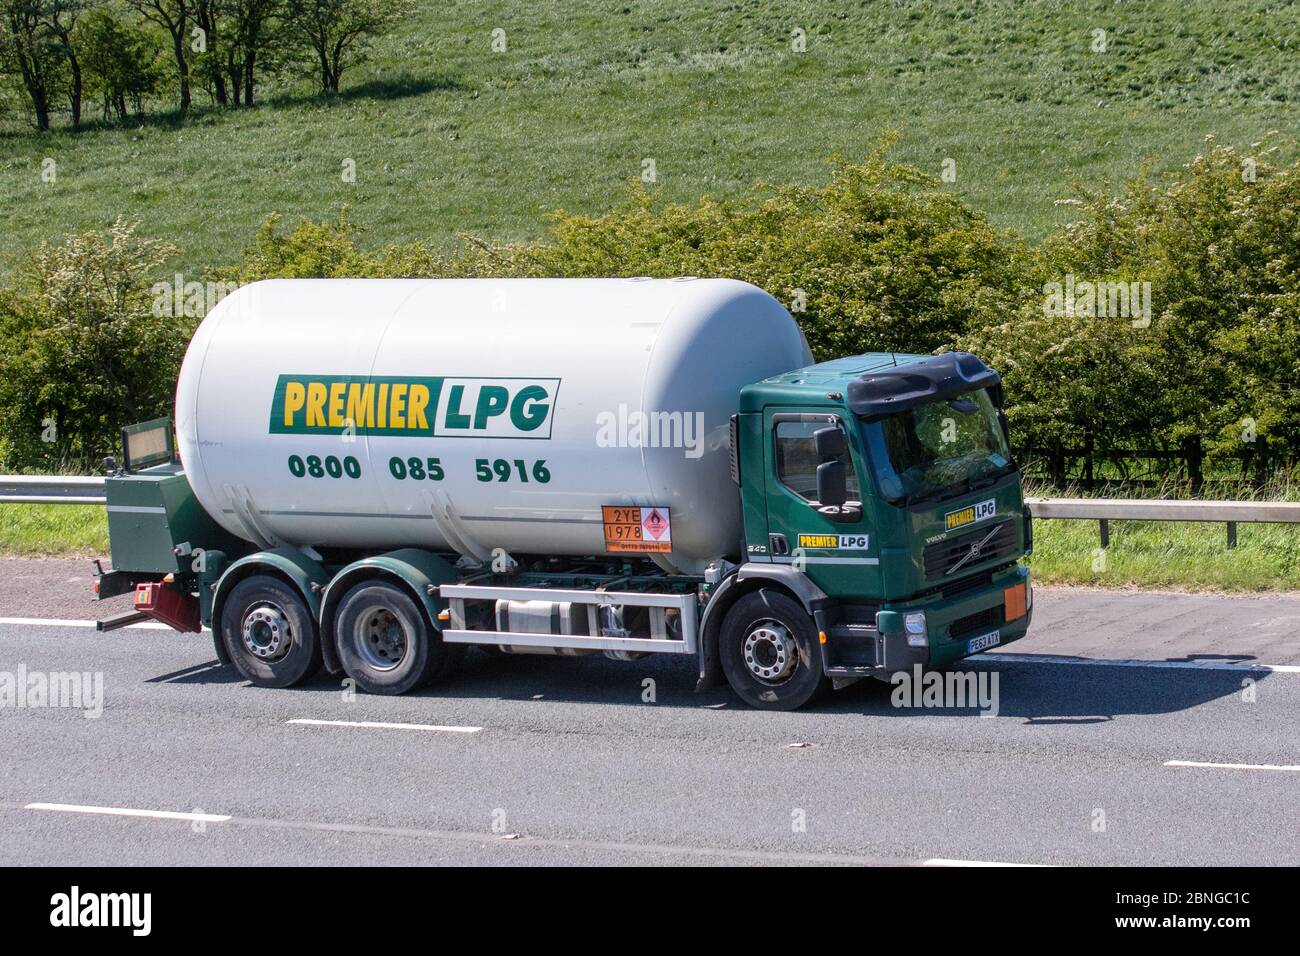 Premier LPG Tanker; Transportfahrzeuge, Lastwagen, Transport, LKW, Frachtführer, Volvo-Fahrzeug, europäischer kommerzieller Transport, Industrie, M61 in Manchester, Großbritannien Stockfoto